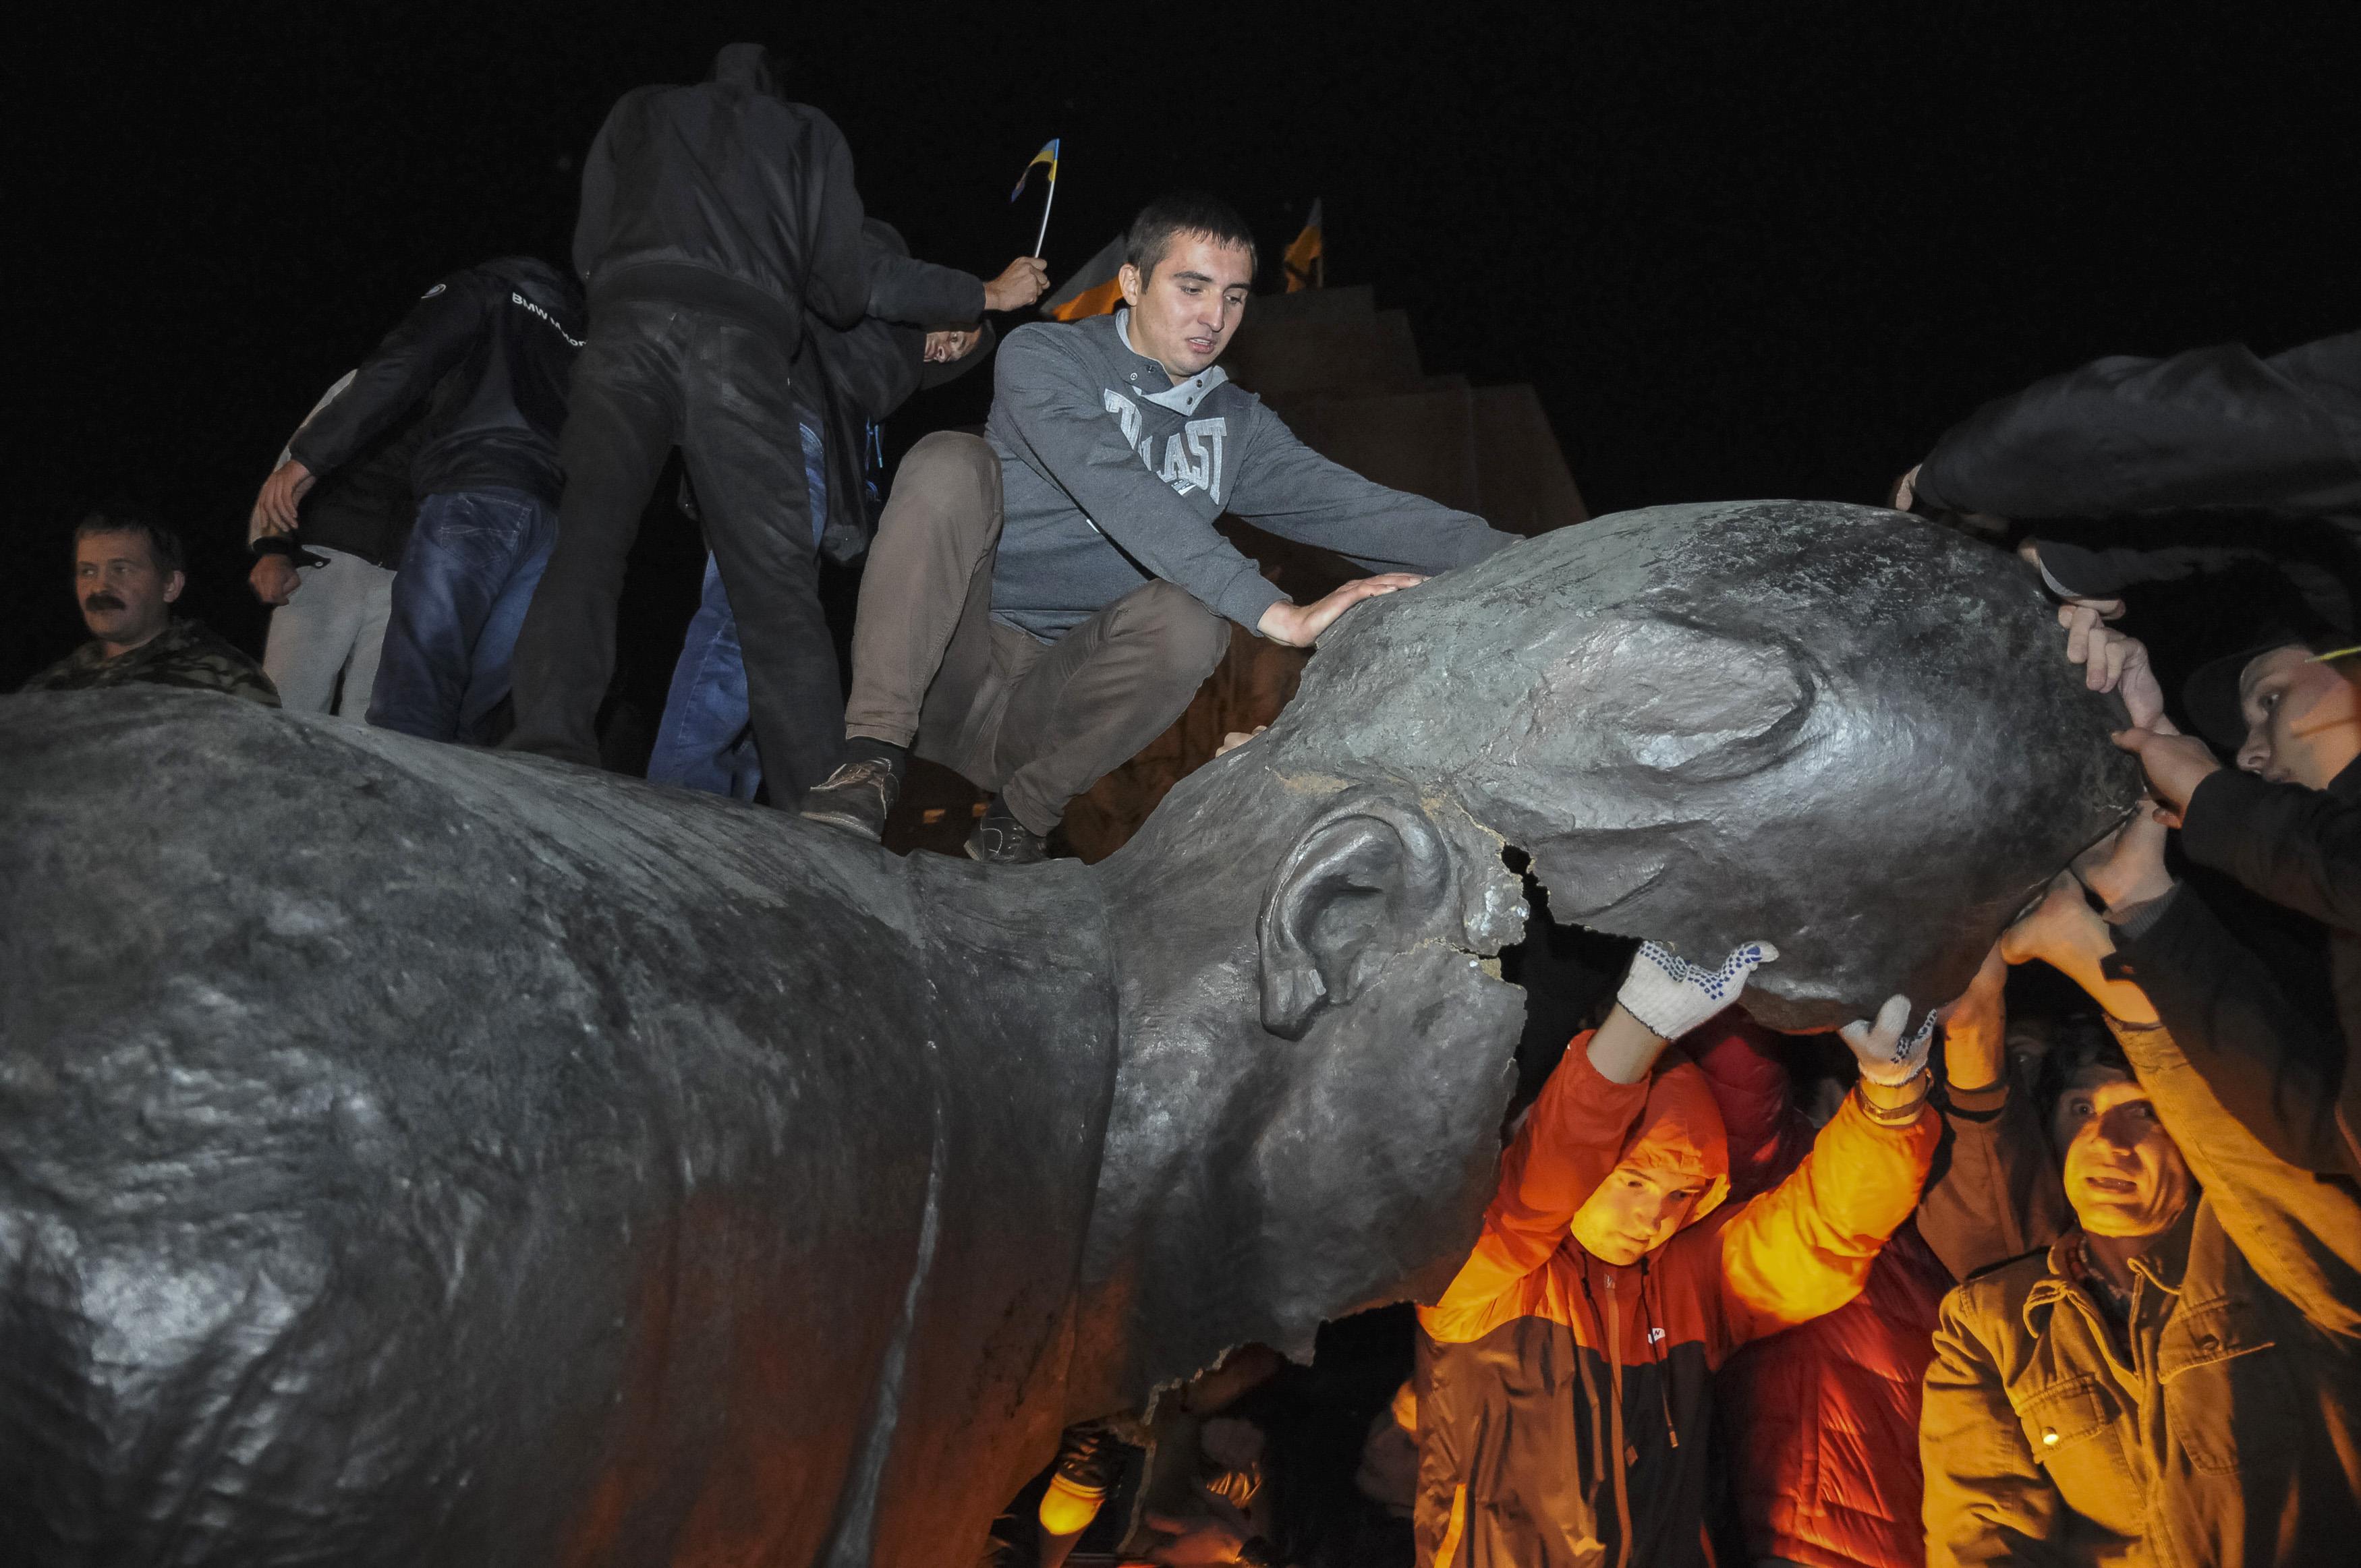 Πλήθος ουκρανών γκρέμισε μεγάλο άγαλμα του Λένιν στο Χάρκοβο